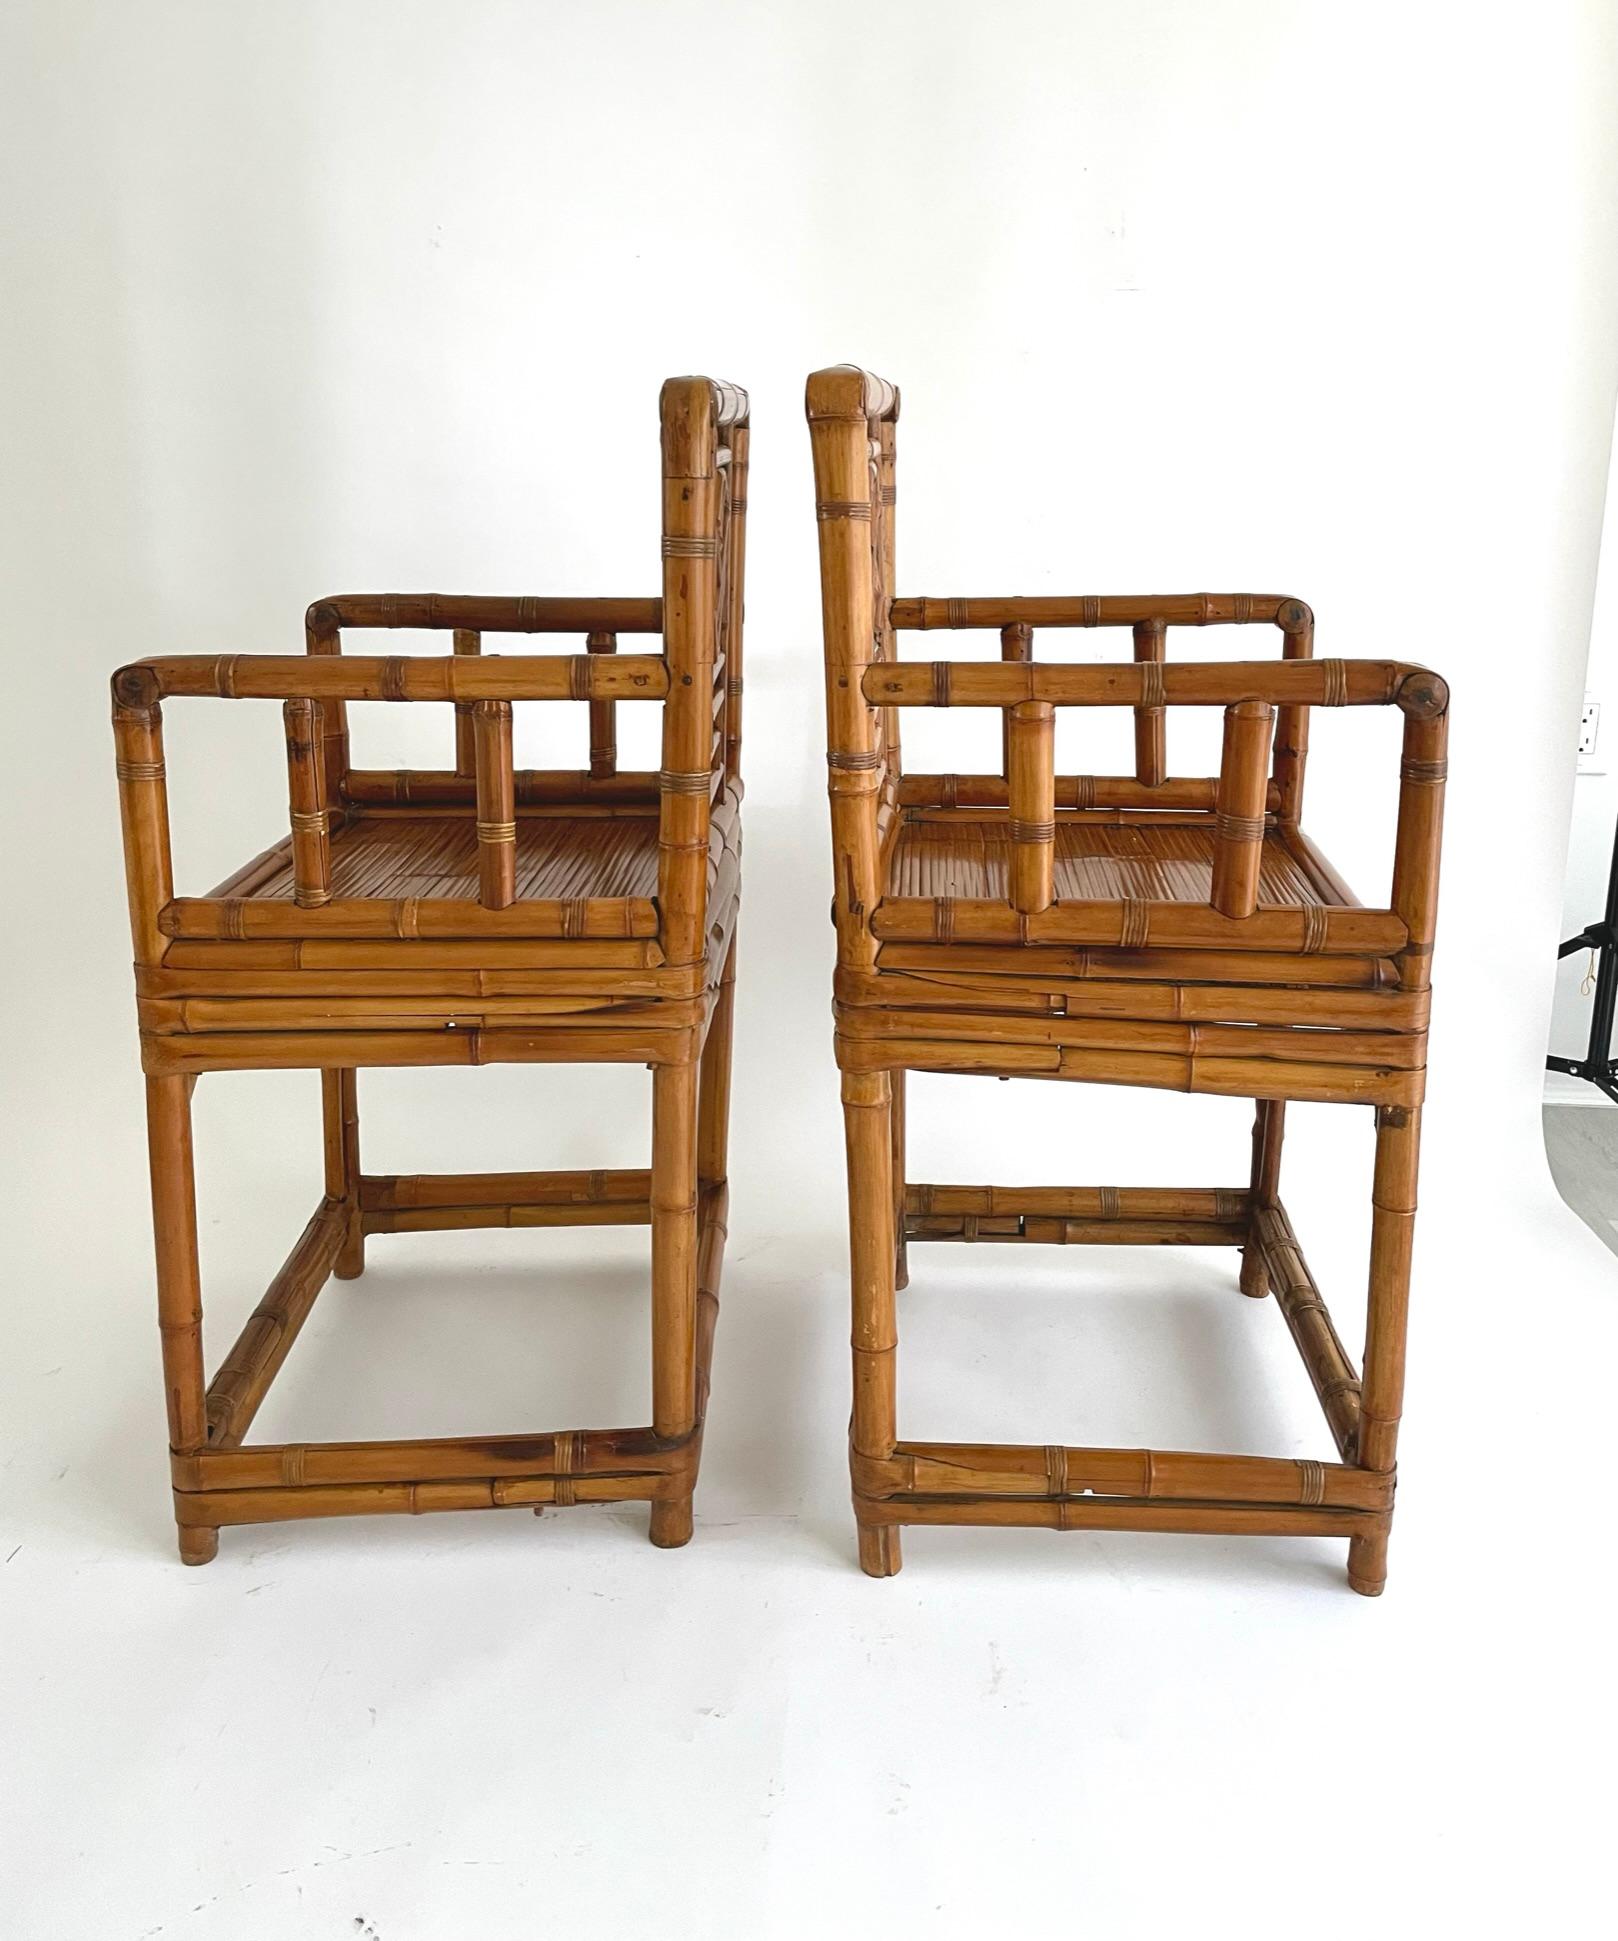 Zwei feine Bambussessel aus dem frühen 20. Jahrhundert mit Gittermuster. 

Alte Bambusmöbel sind viel seltener als Holzmöbel, da nur wenige erhalten geblieben sind. Die Tischlerei von Bambusmöbeln kann sehr verlockend sein, weil sie teilweise die